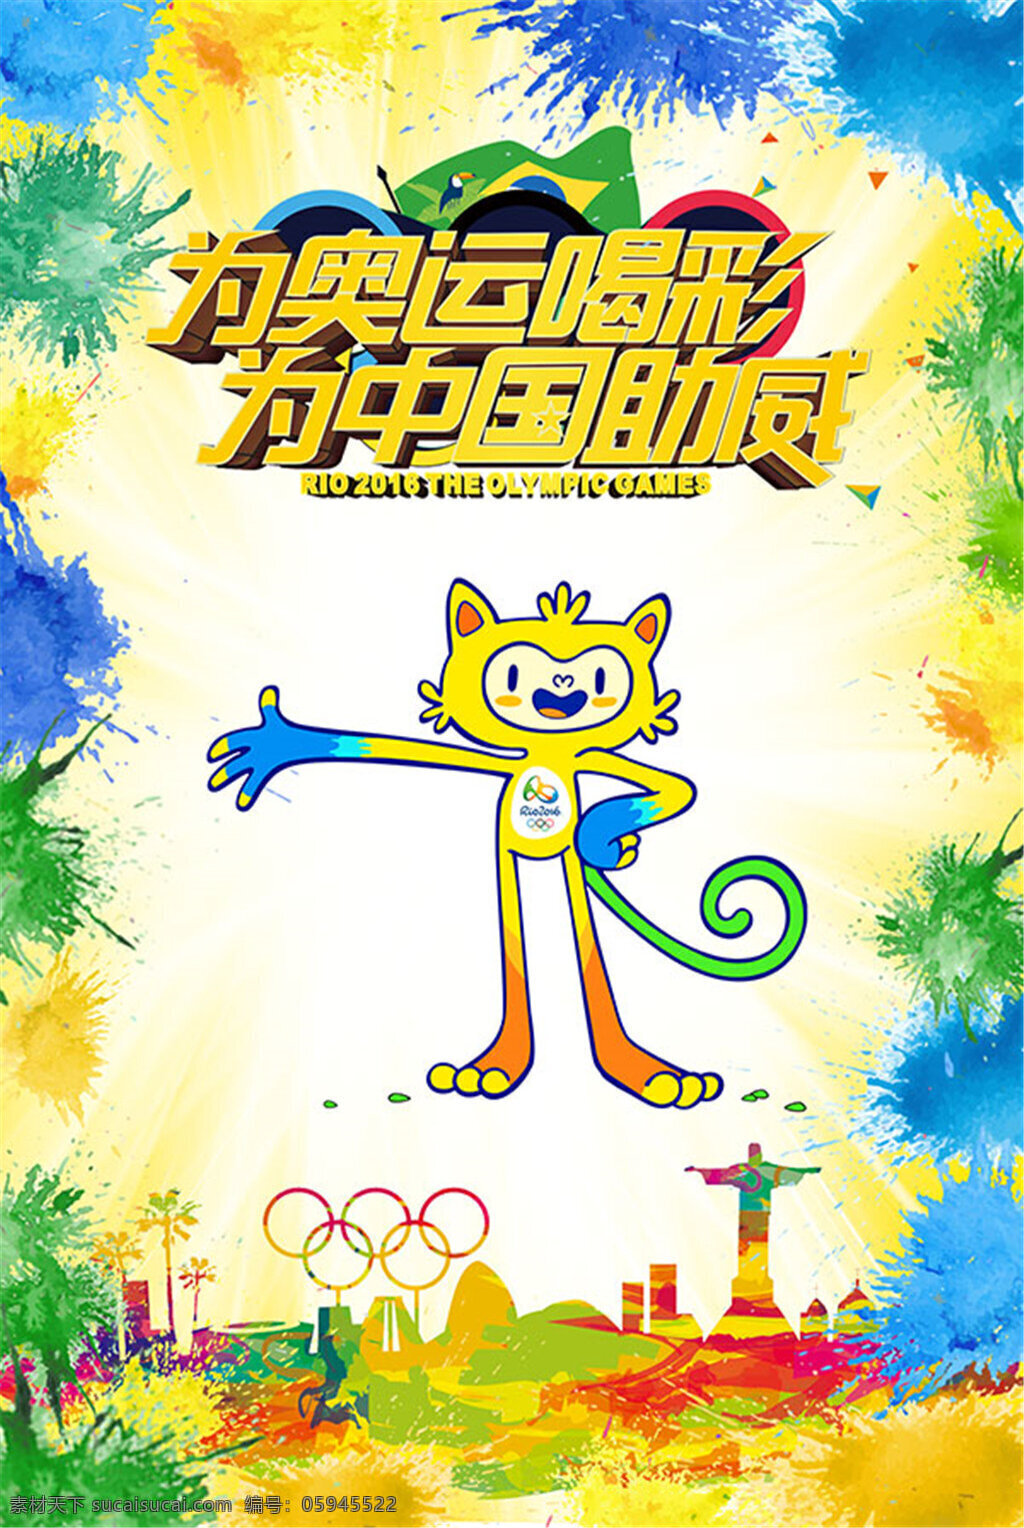 奥运 喝彩 海报 奥运会 平面设计 奥运喝彩 为中国助威 白色